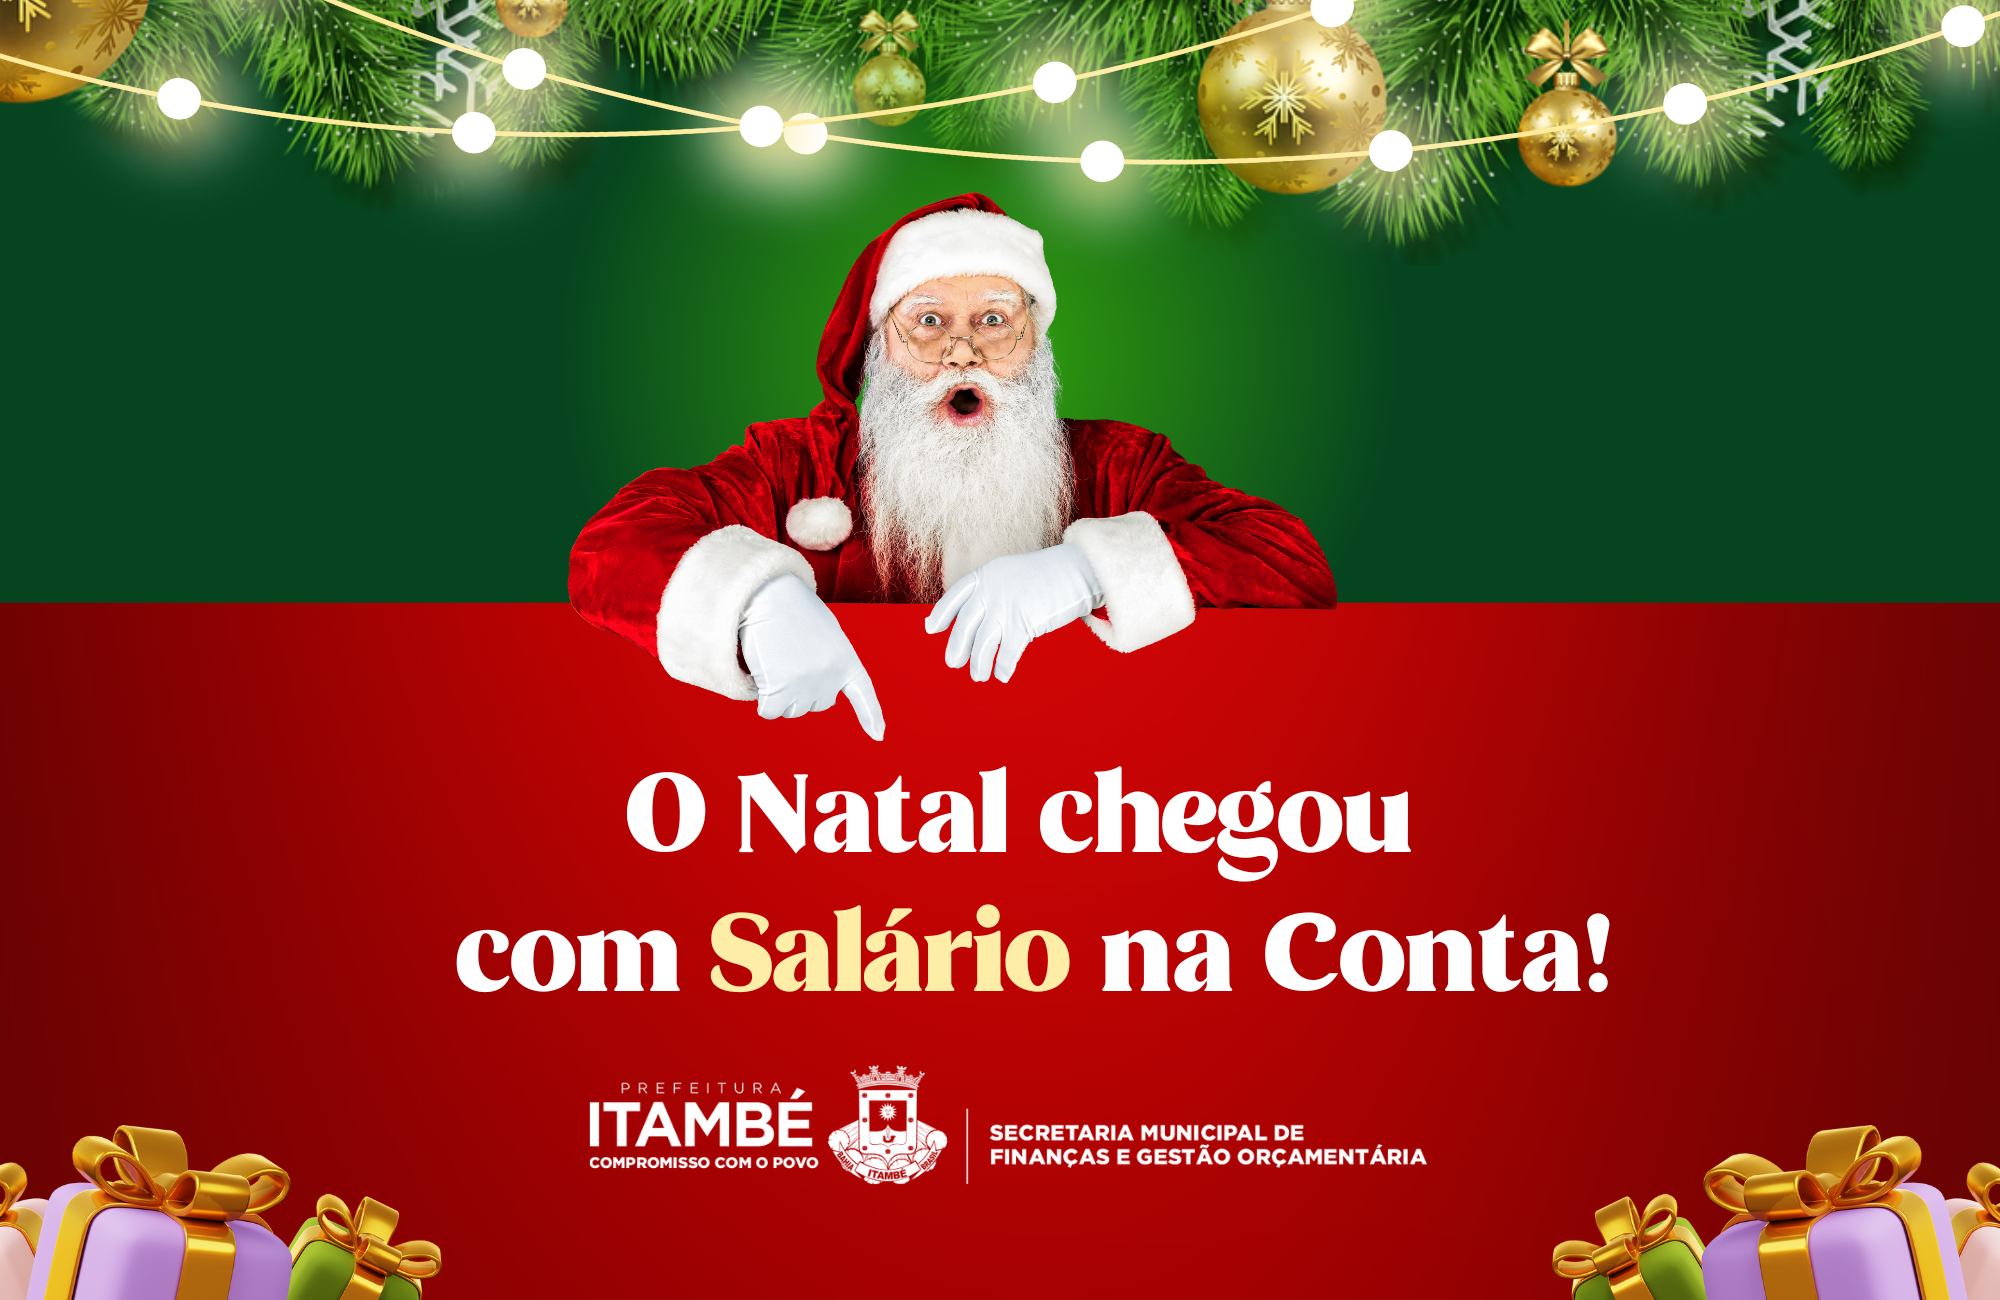 Às vésperas do Natal, Prefeitura de Itambé antecipa salários de dezembro -  Notícias - Prefeitura de Itambé - Site Oficial